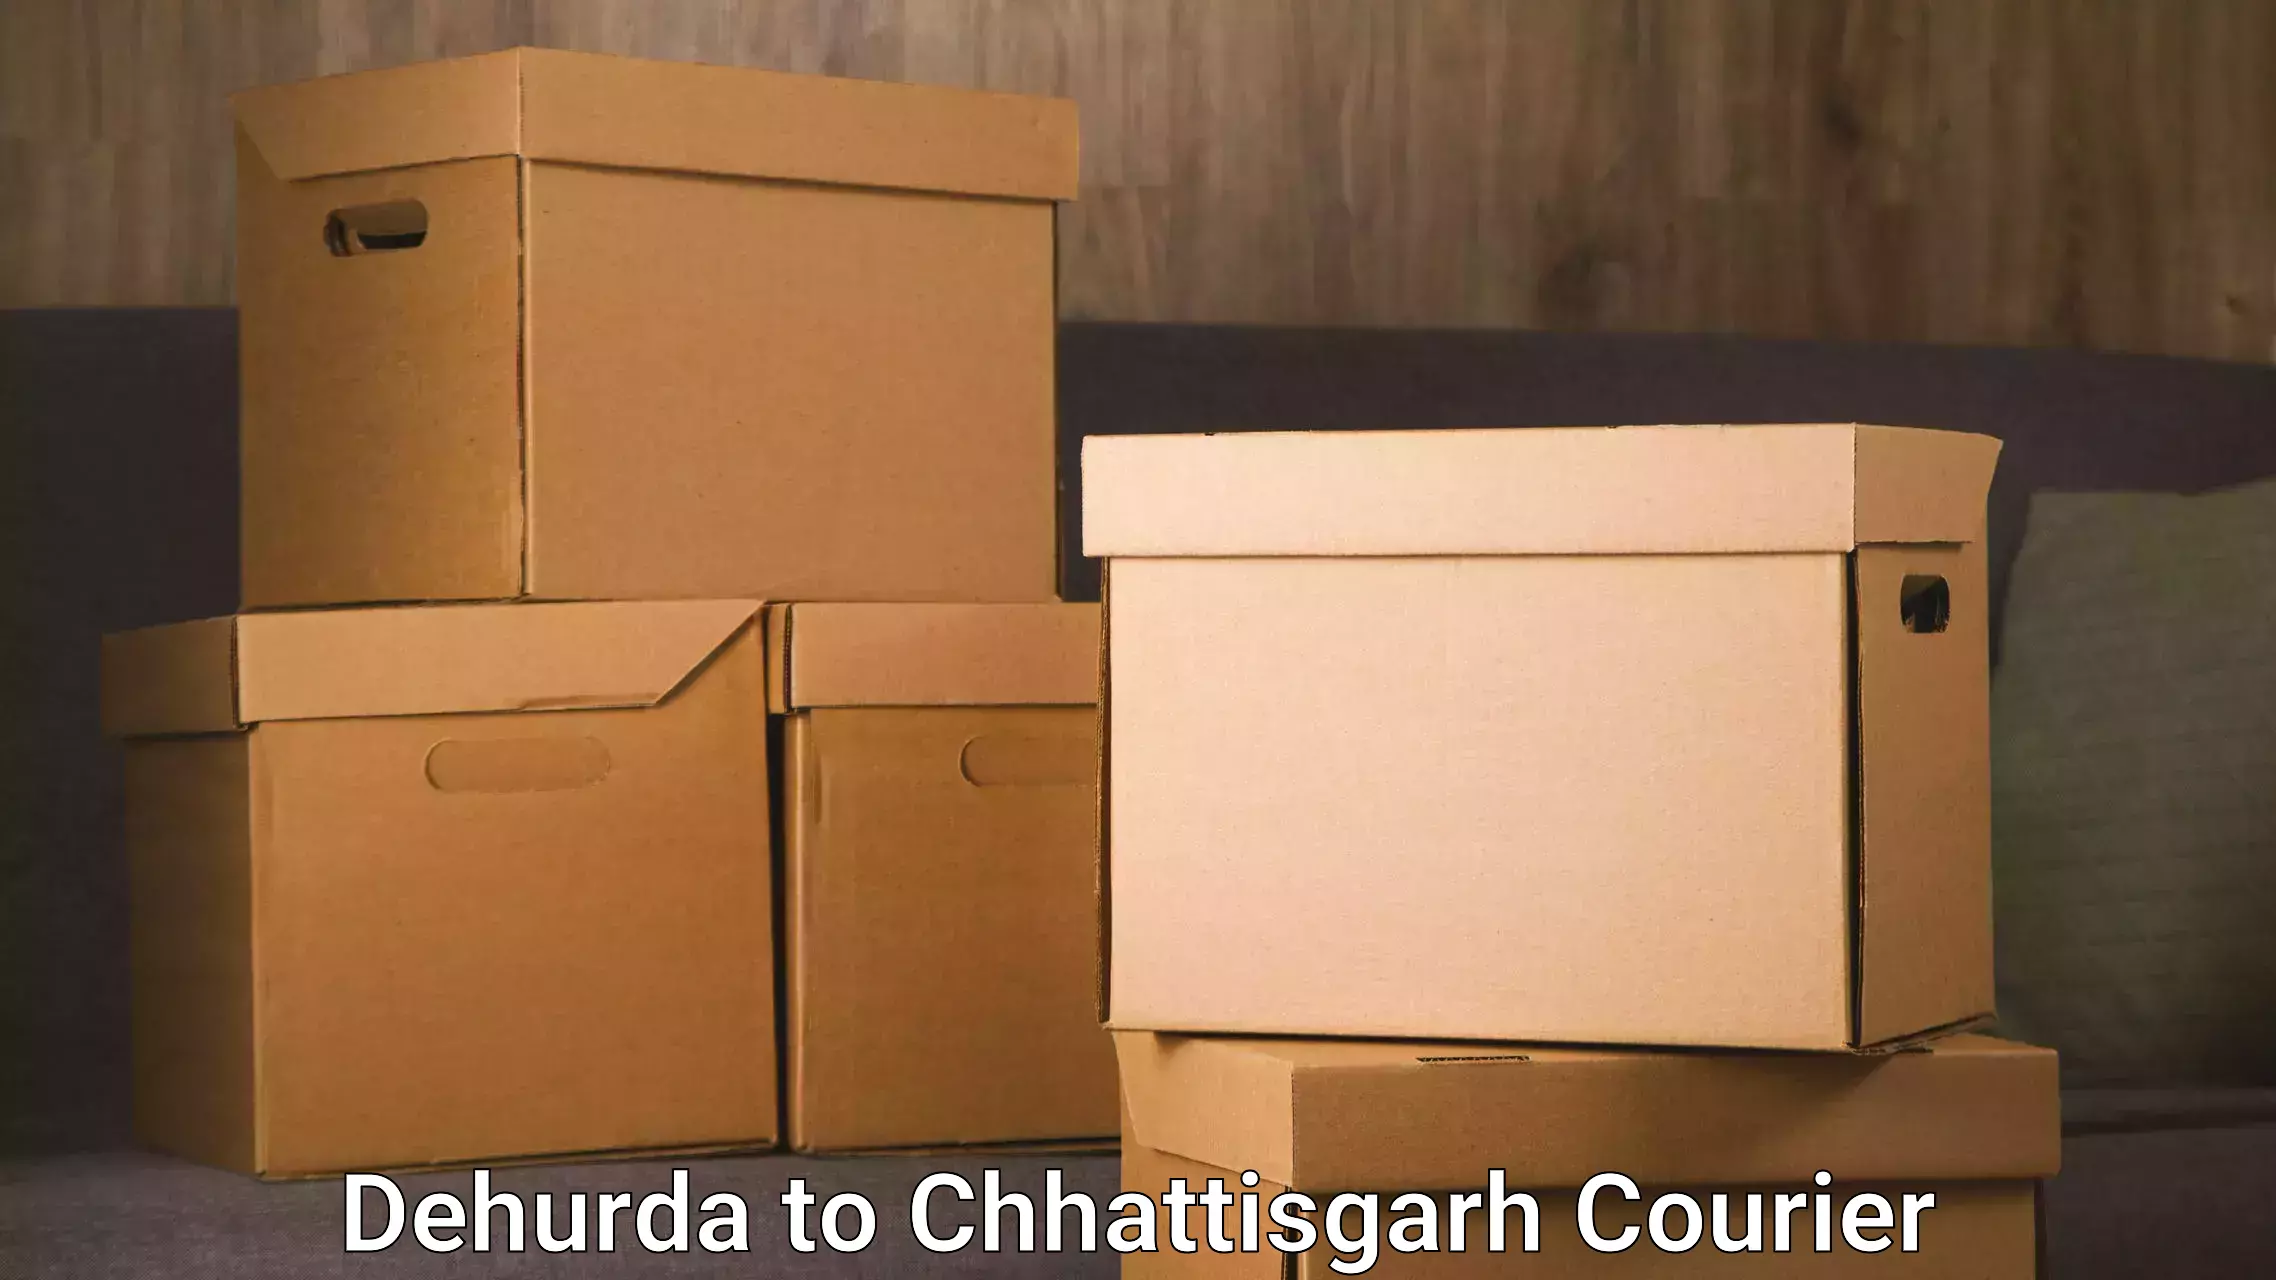 Overnight delivery services Dehurda to Patna Chhattisgarh